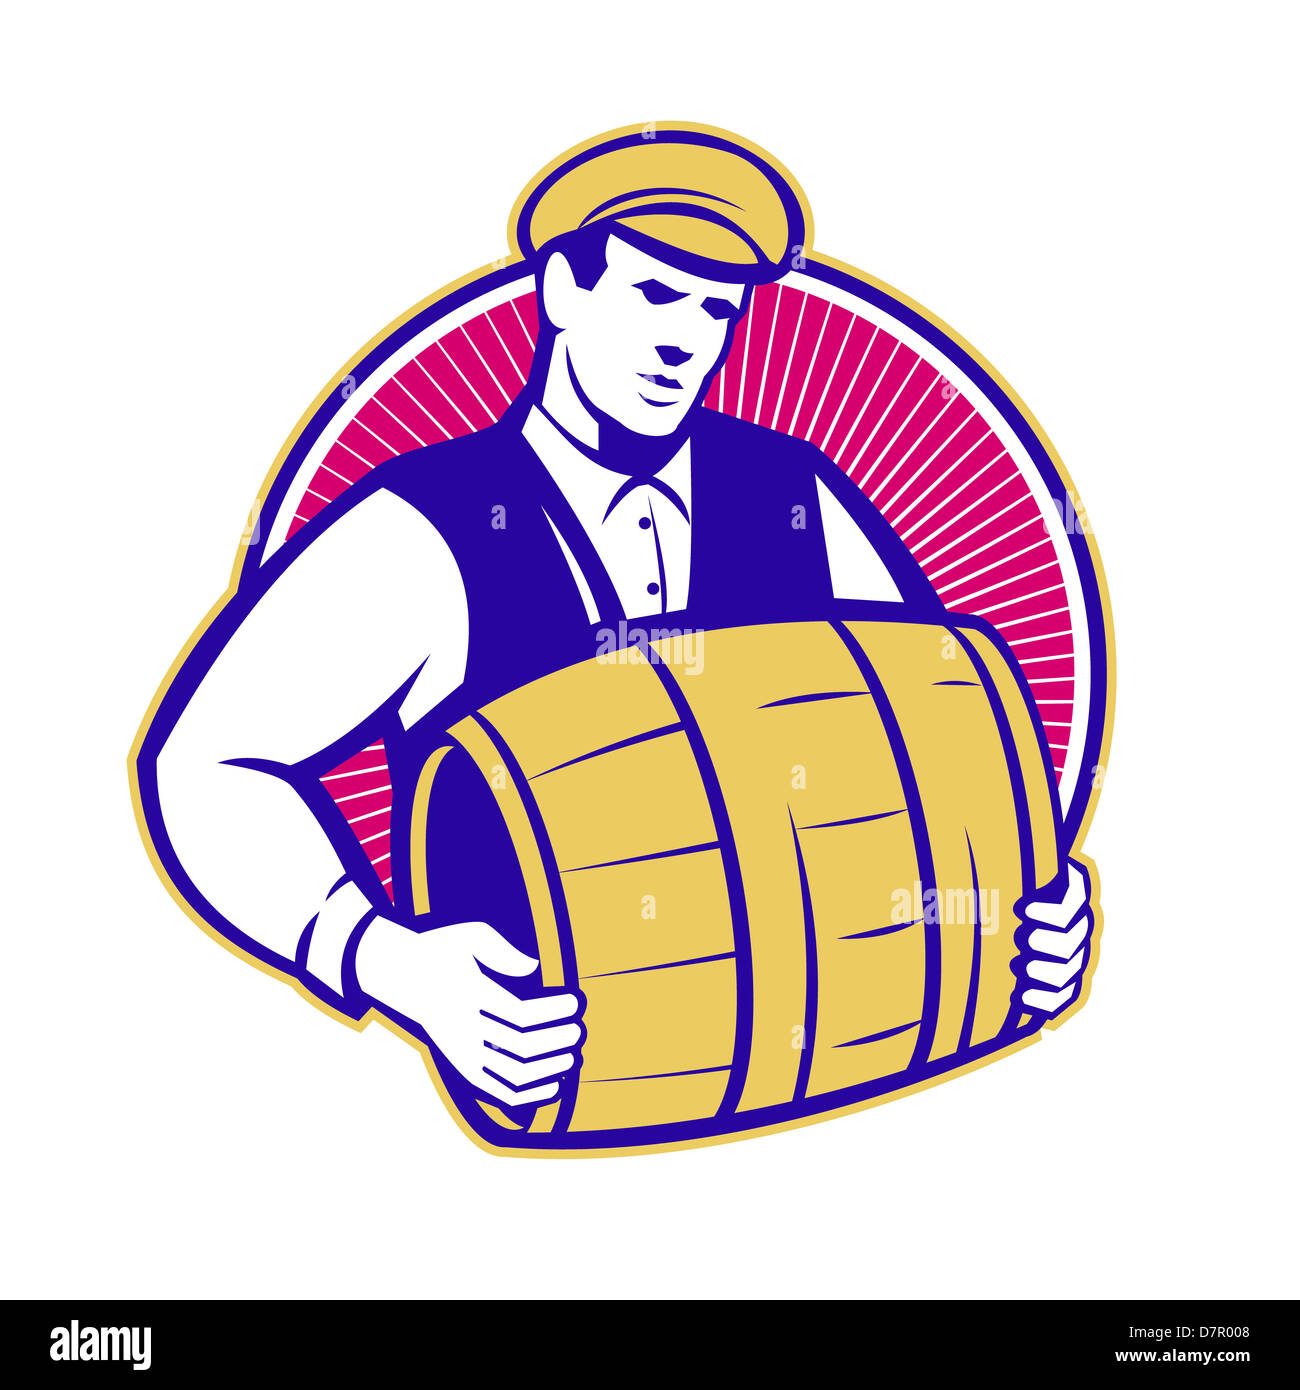 Retro-Stil Illustration ein Barkeeper tragen Keg Fass Bier im inneren Kreis auf isolierten weißen Hintergrund gesetzt. Stockfoto